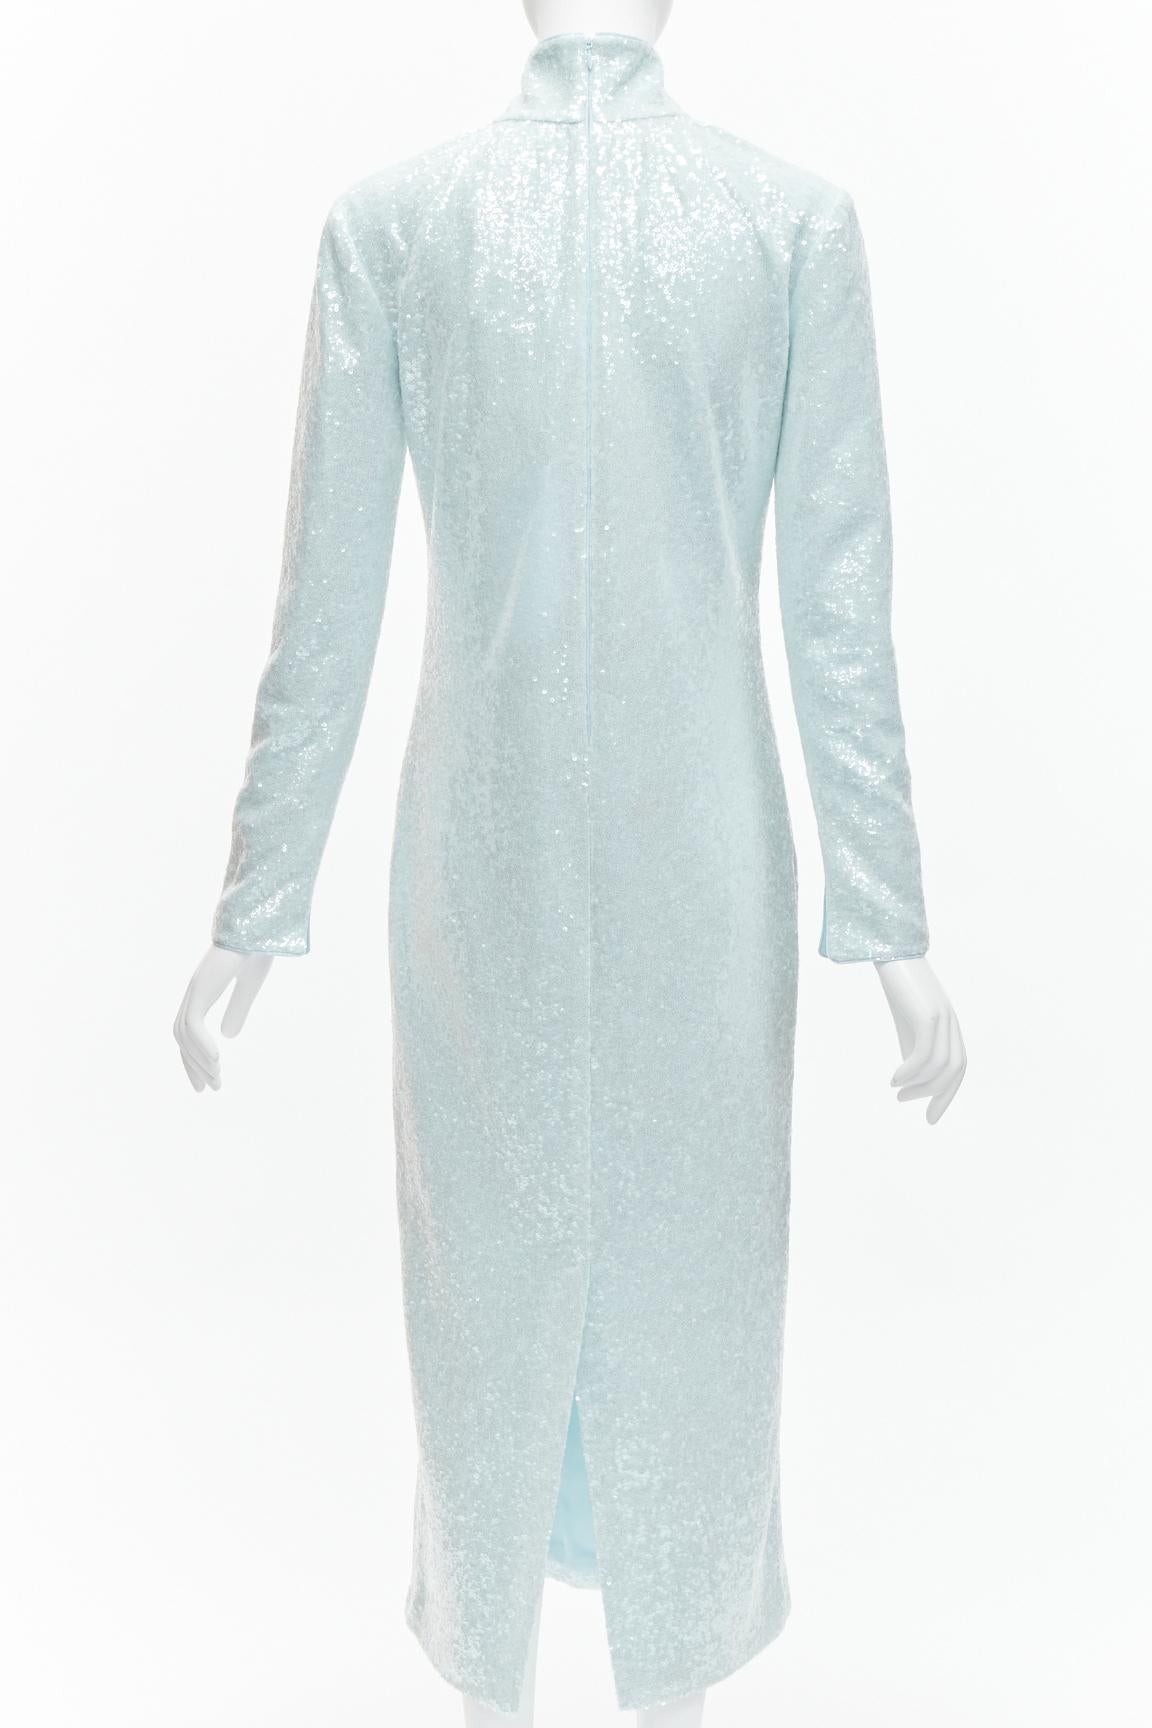 16ARLINGTON Vida light blue sequins high neck long sleeves cocktail dress UK6 XS For Sale 1